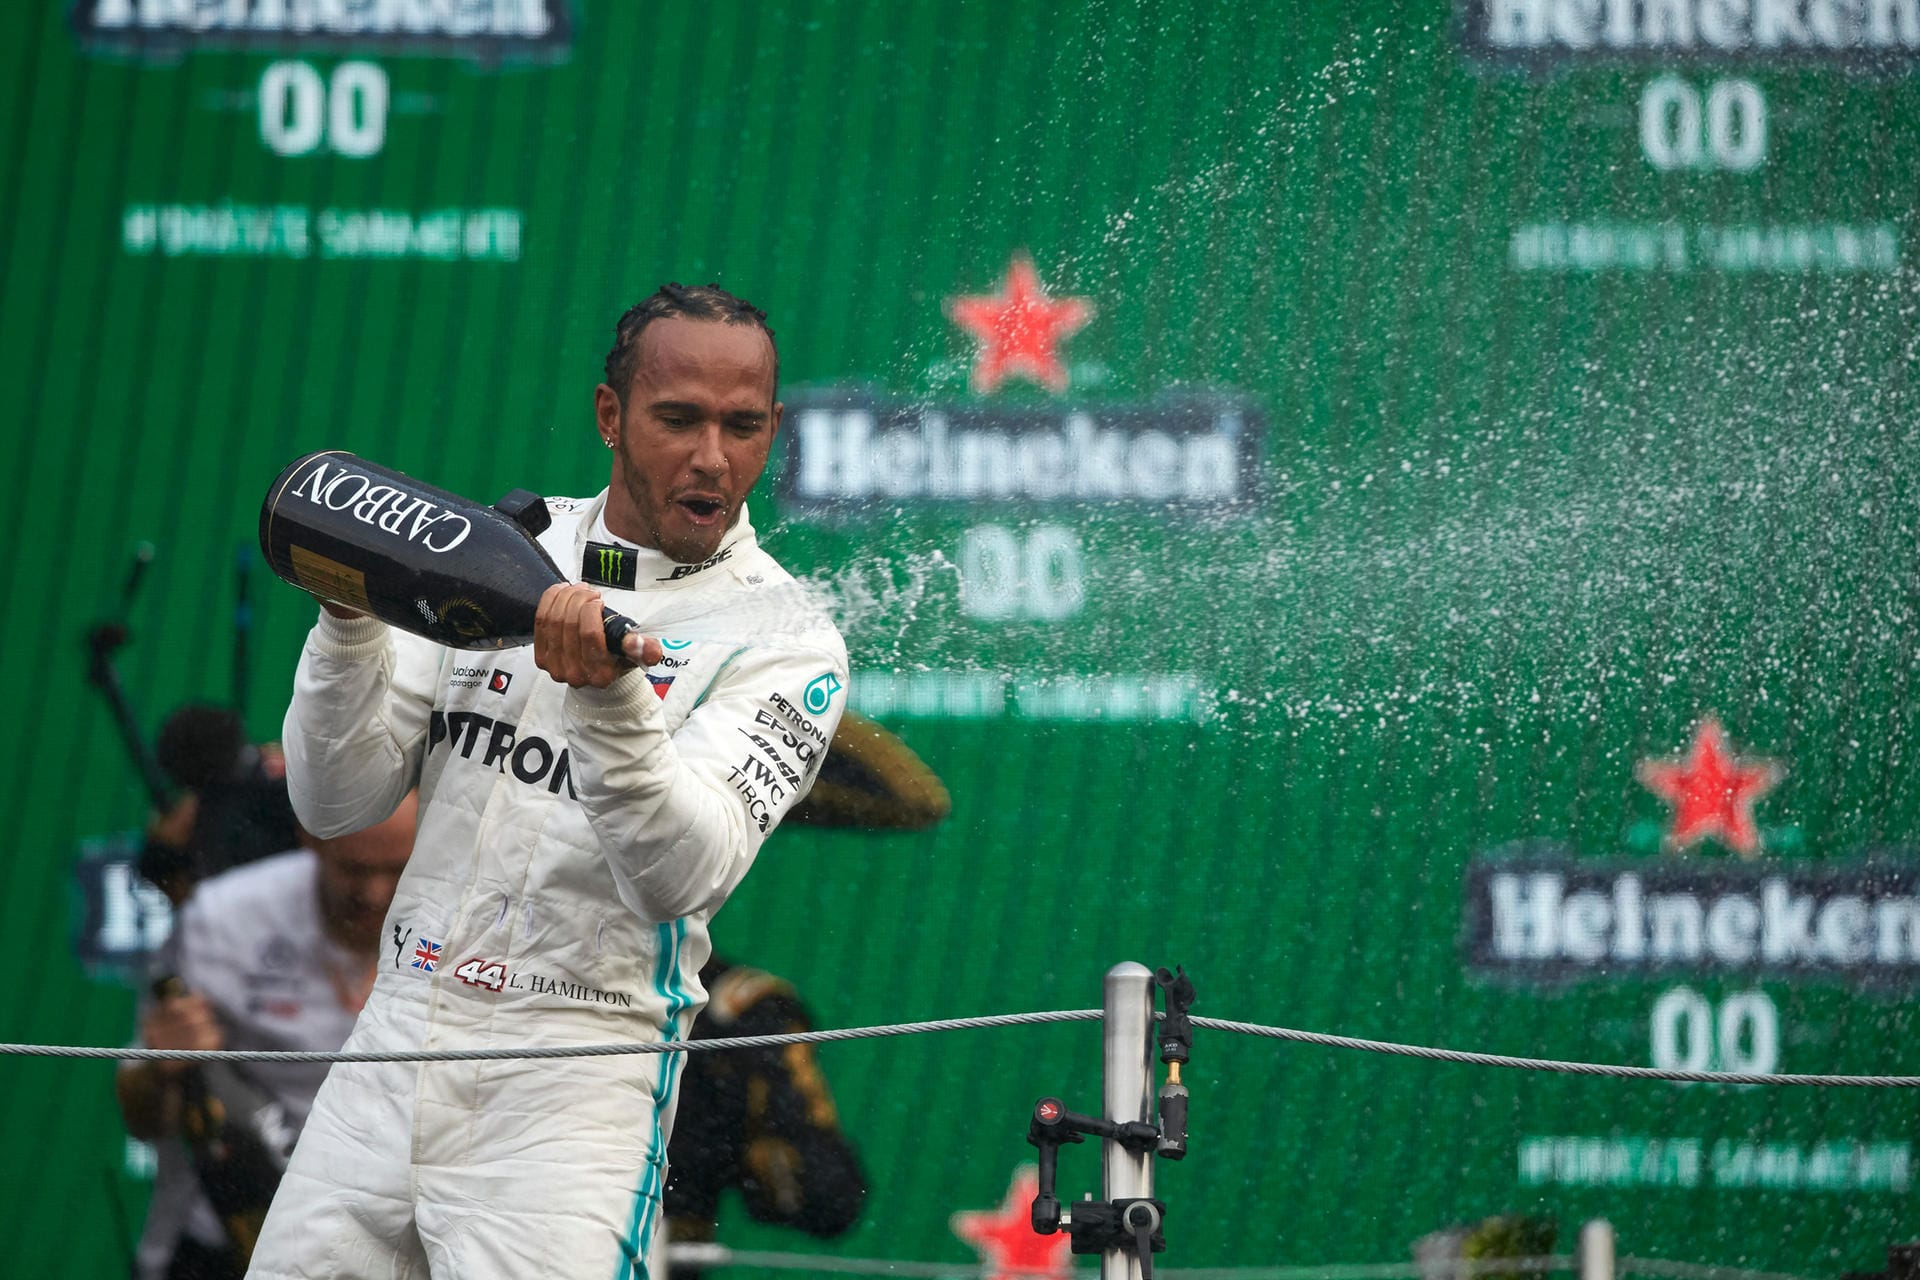 Krone (Österreich): "Lewis Hamilton hat den Formel-1-Grand-Prix von Mexiko gewonnen – auf seinen 6. WM-Titel muss der Brite allerdings noch warten! Der Mercedes-Star verwies am Sonntag dank perfektem Reifen-Management Ferrari-Pilot Sebastian Vettel und seinen Stallgefährten Valtteri Bottas auf die weiteren Plätze."